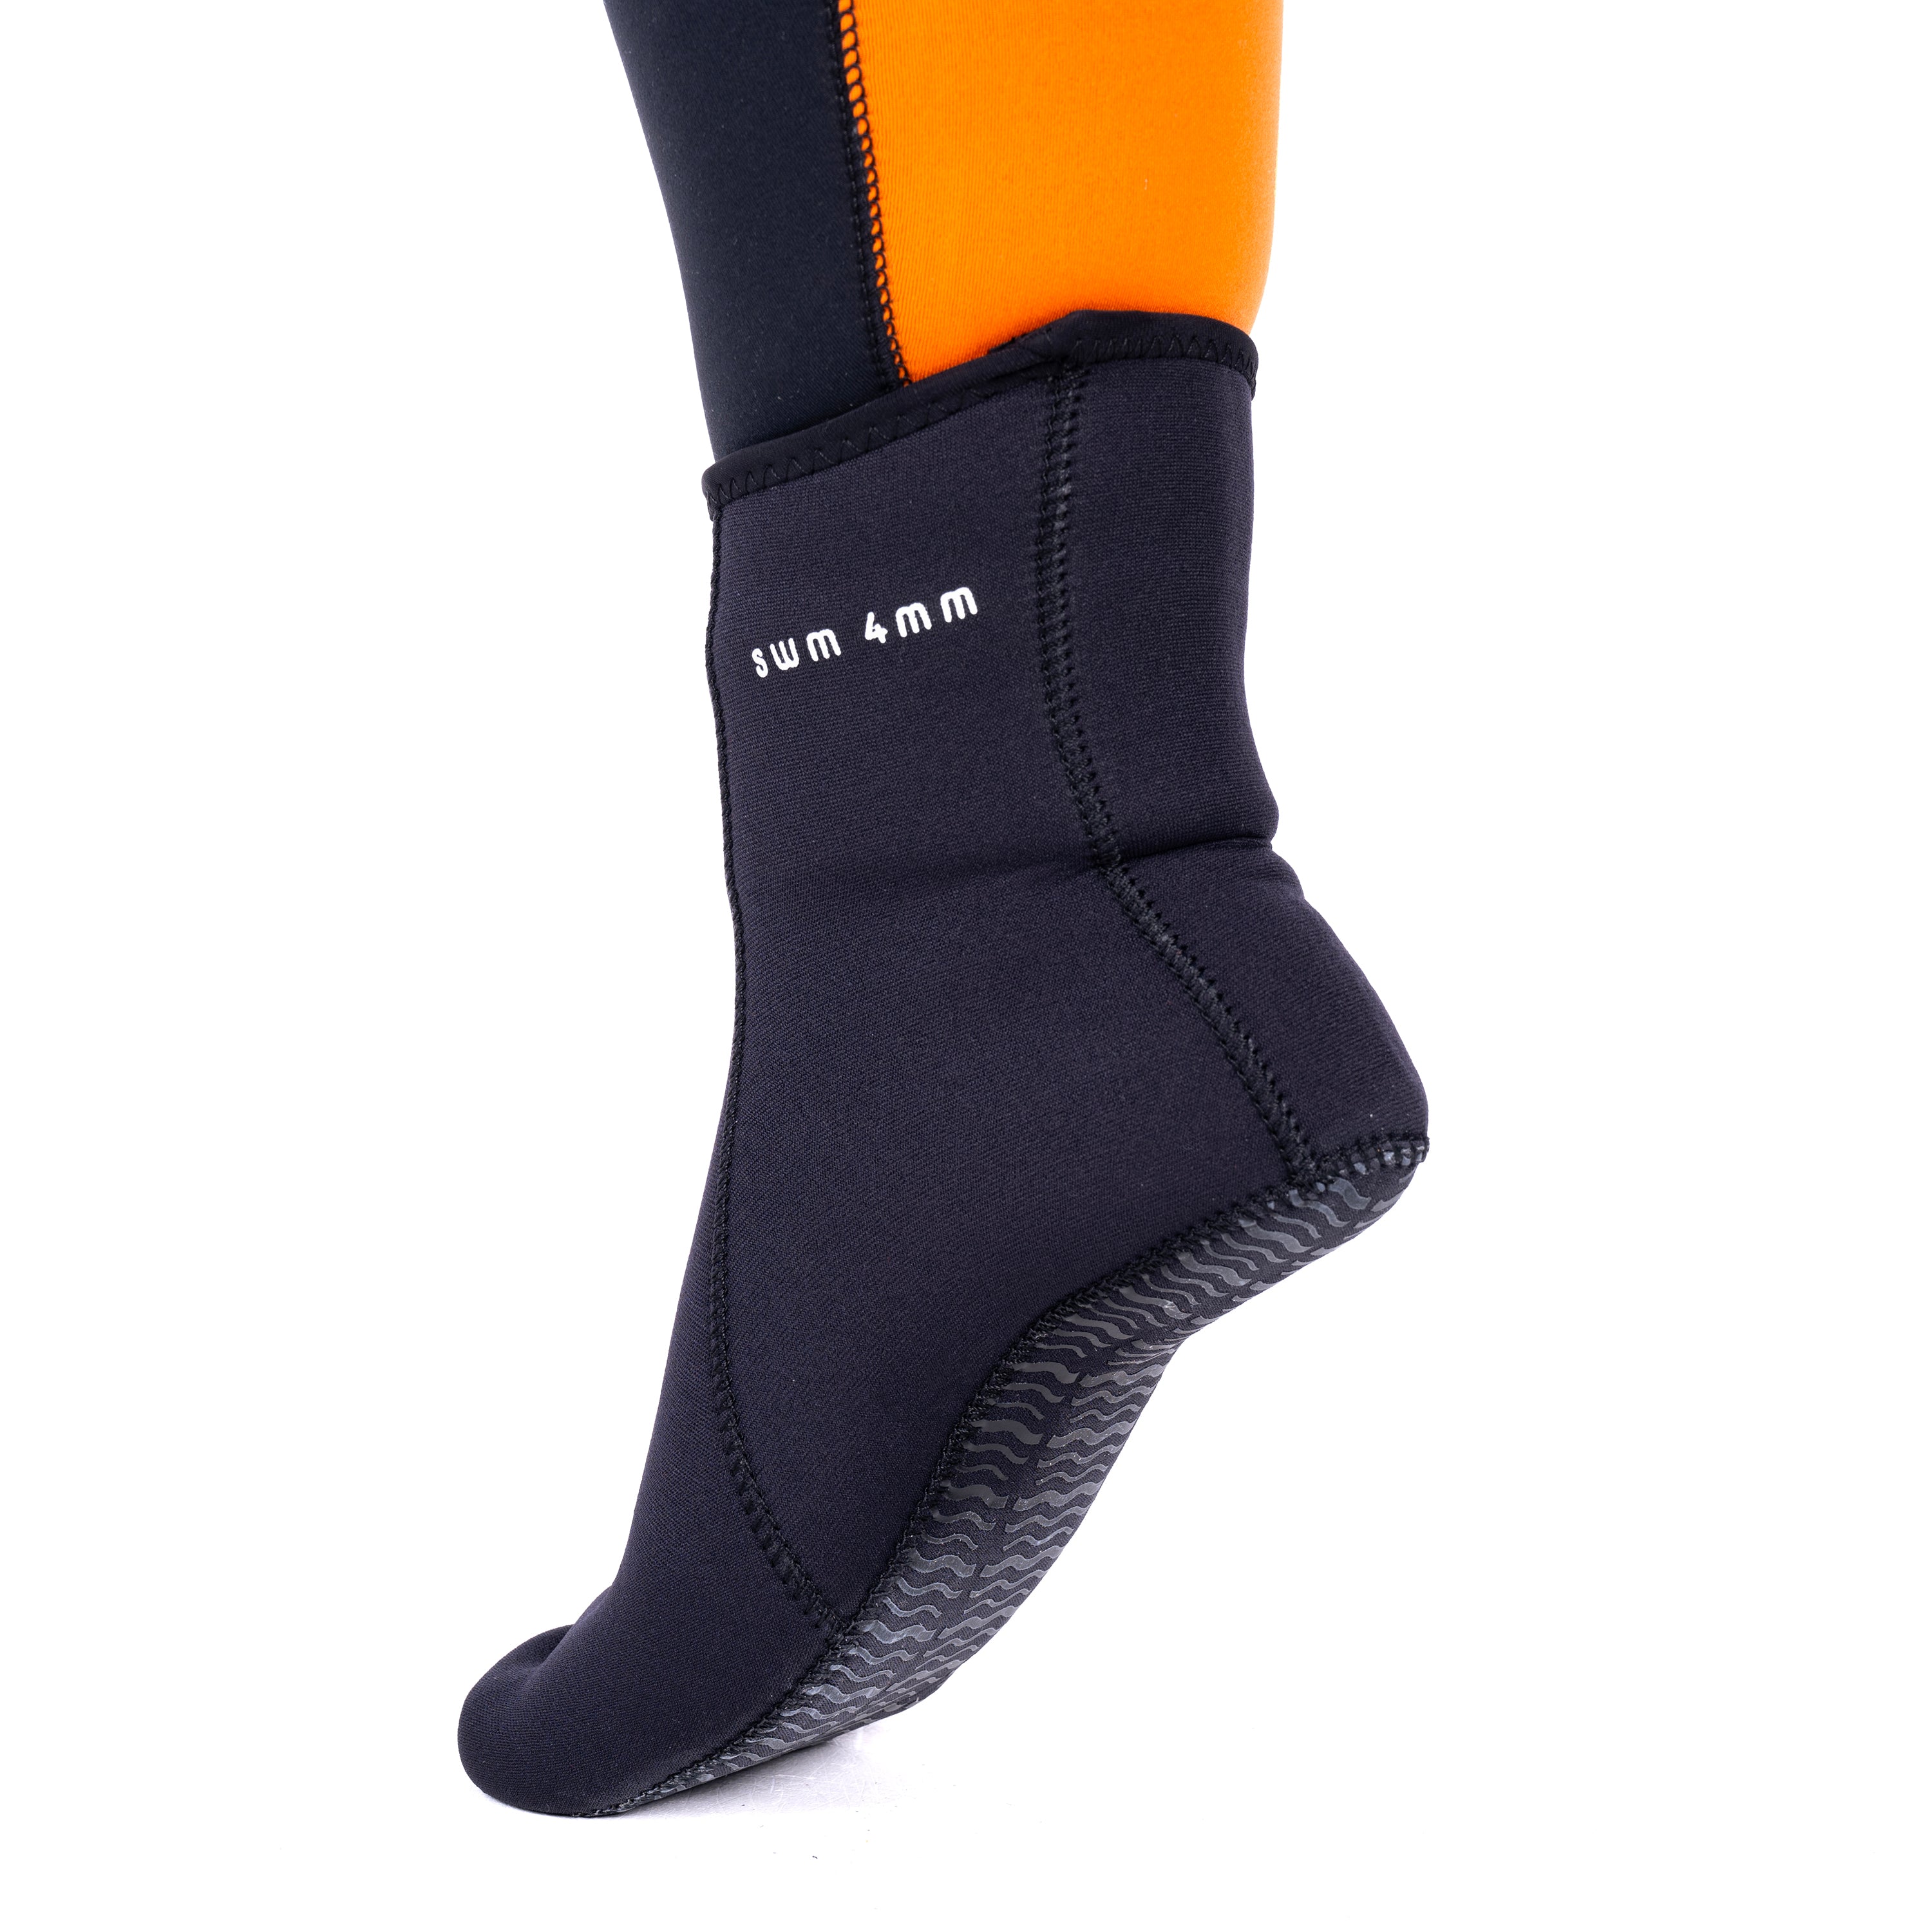 Reefwear SWM 4mm Flex Wetsuit Socks | worn with the Reefwear SWM wetsuit